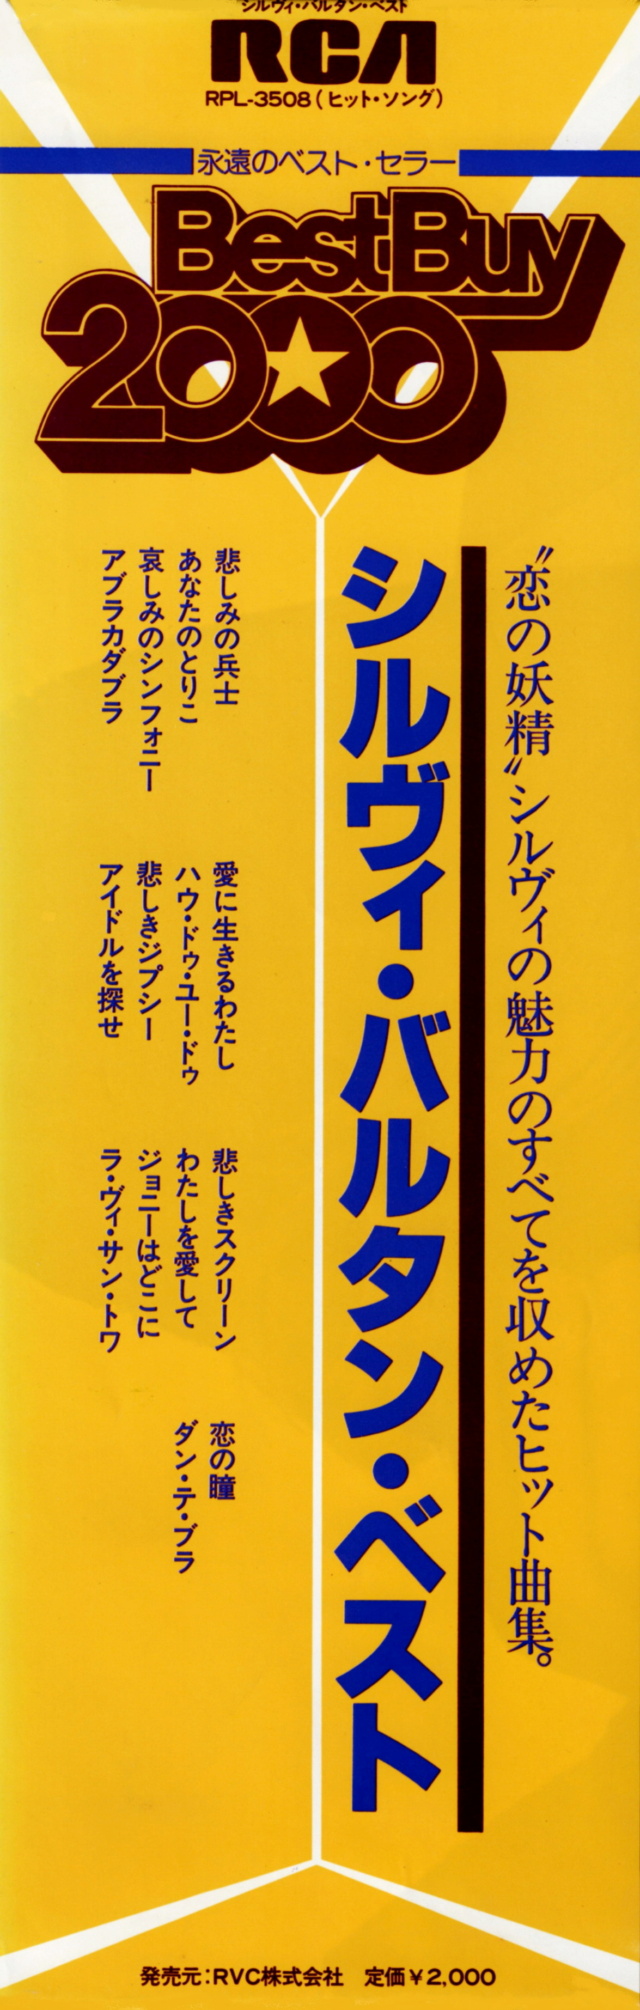 Discographie Japonaise - 4ème partie (33 T COMPILATION) - Page 15 Jpn_rp46